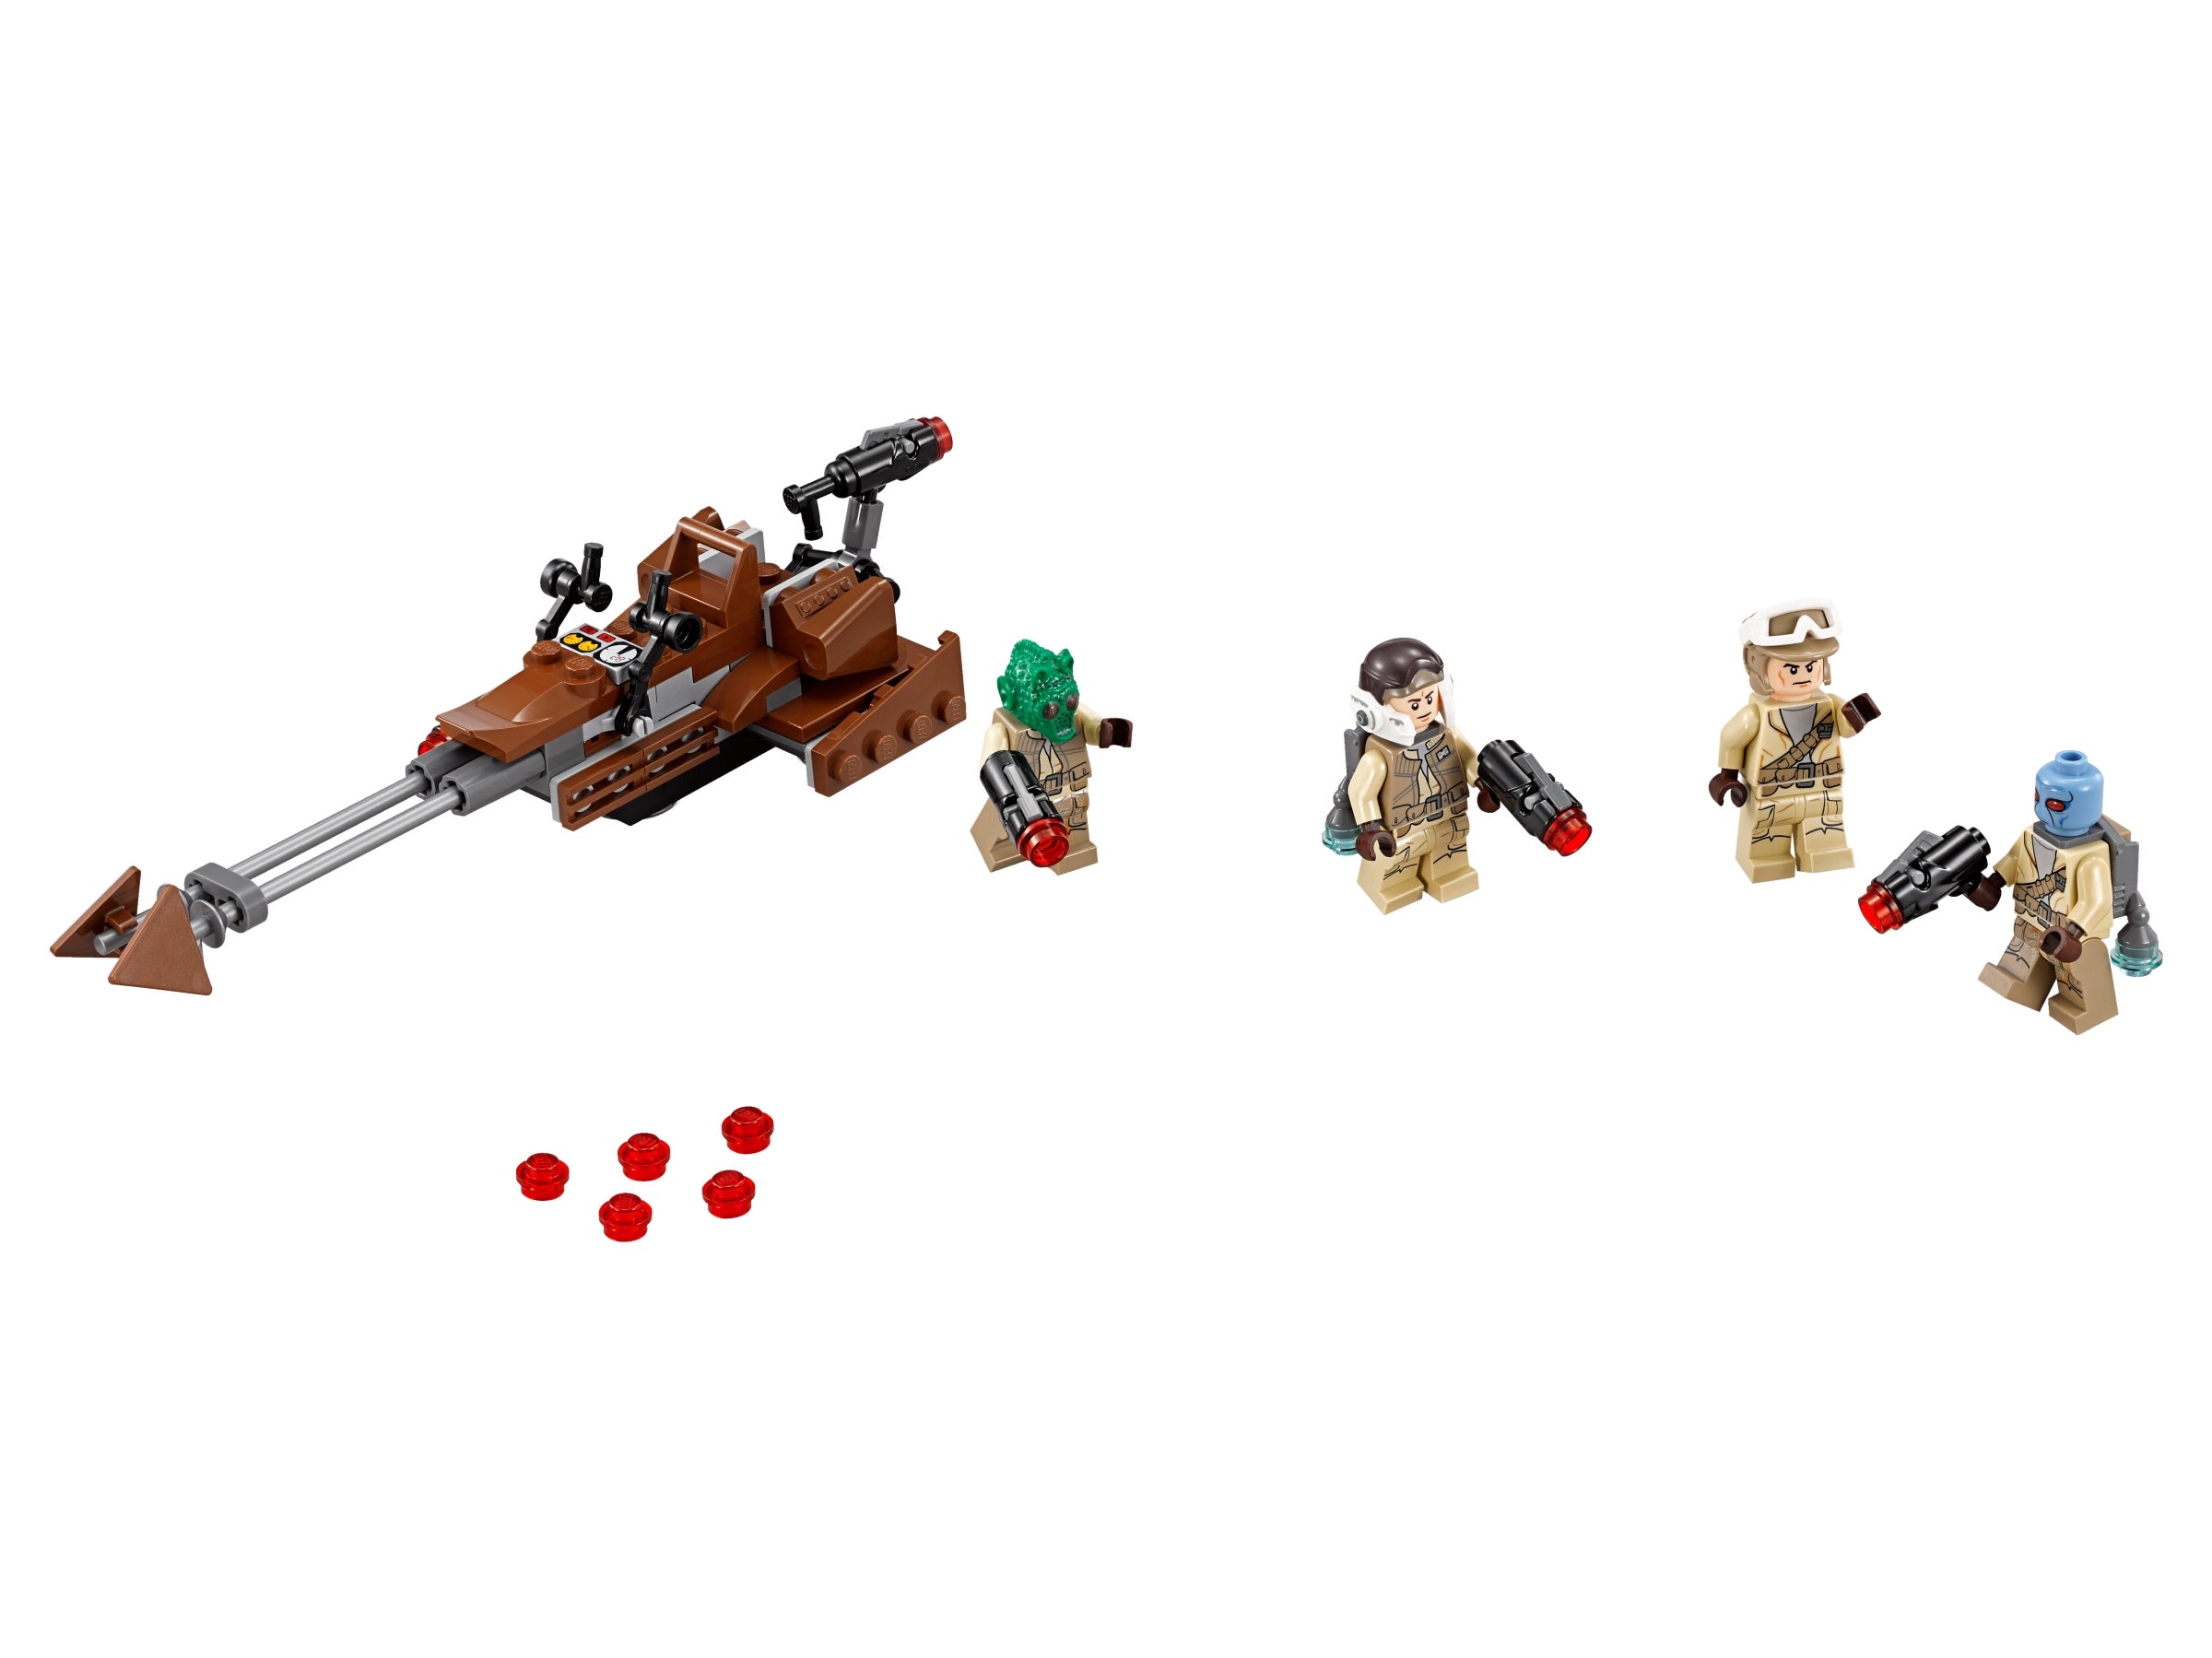 LEGO STAR WARS REBEL ALLIANCE BATTLE PACK SET 75133